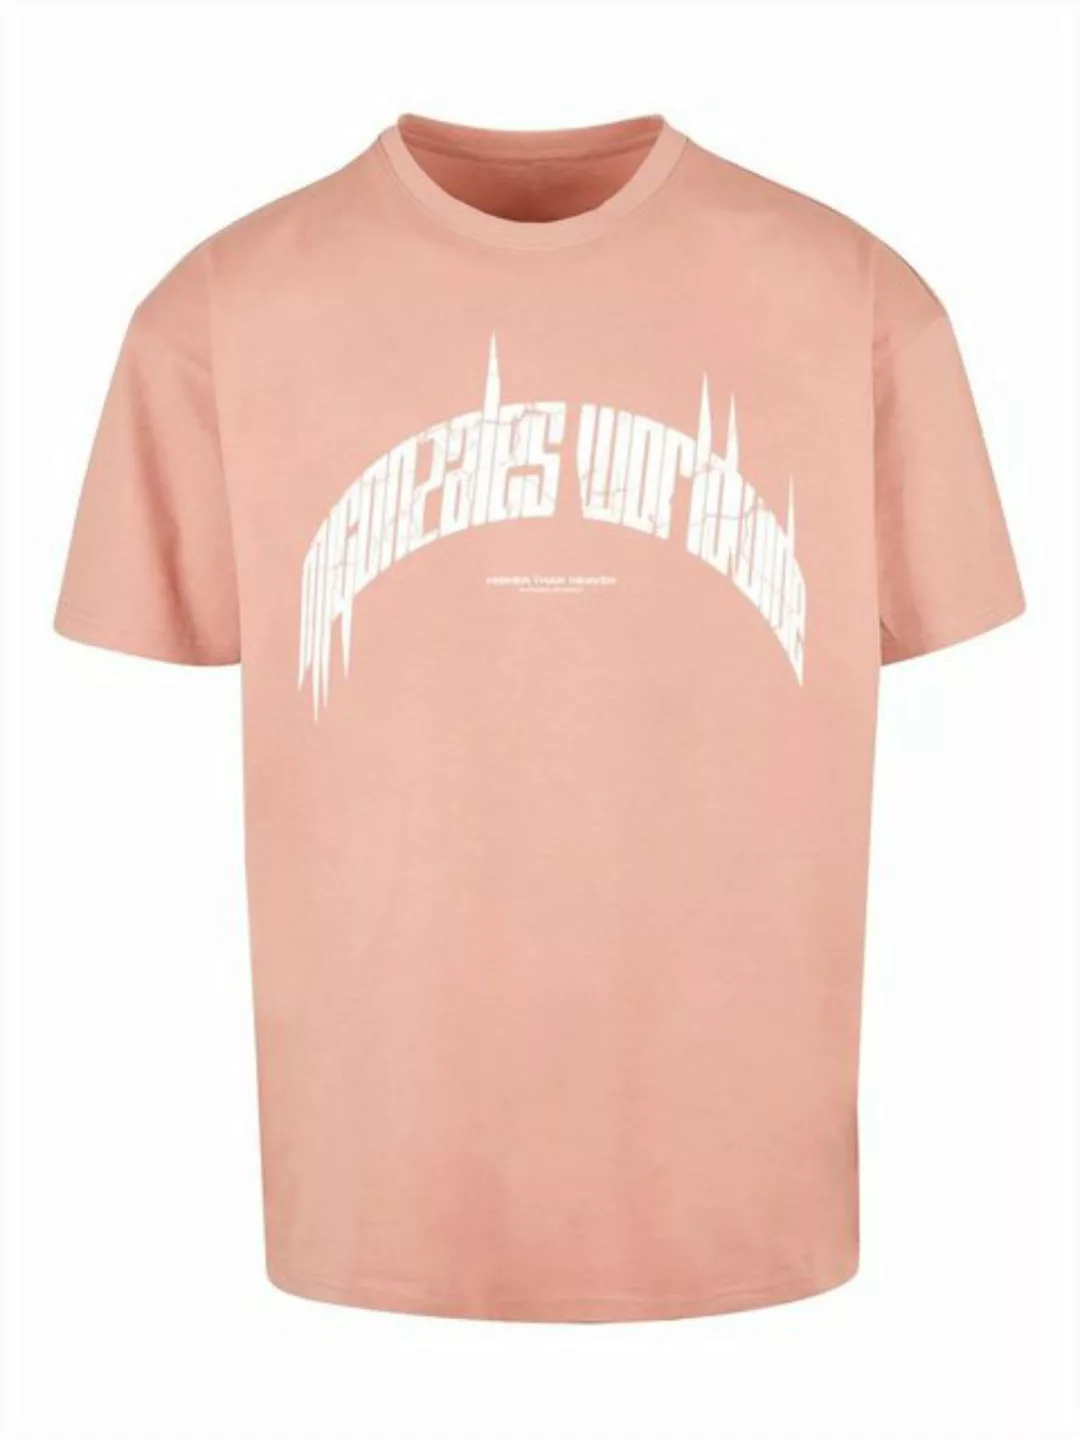 MJ Gonzales T-Shirt günstig online kaufen